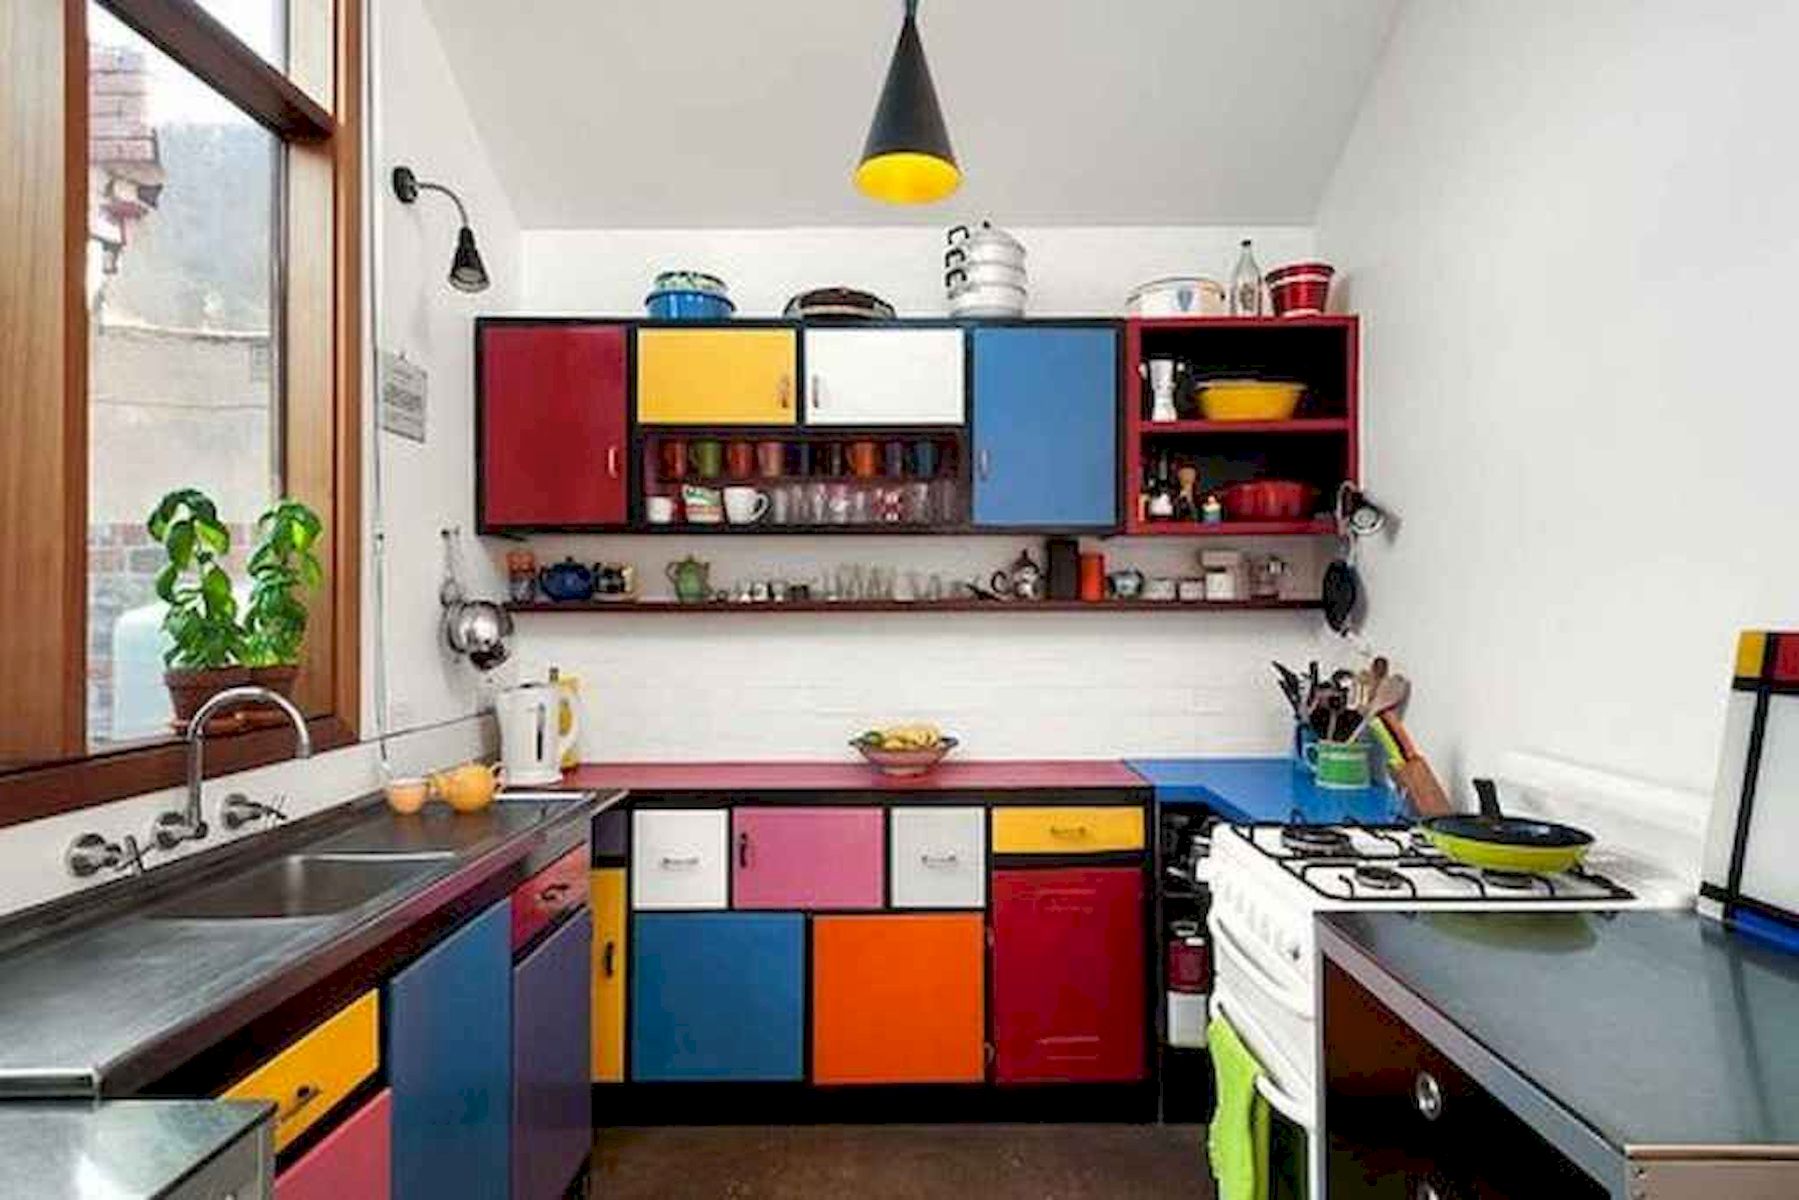 conseil cuisine mobilier idee deco couleur